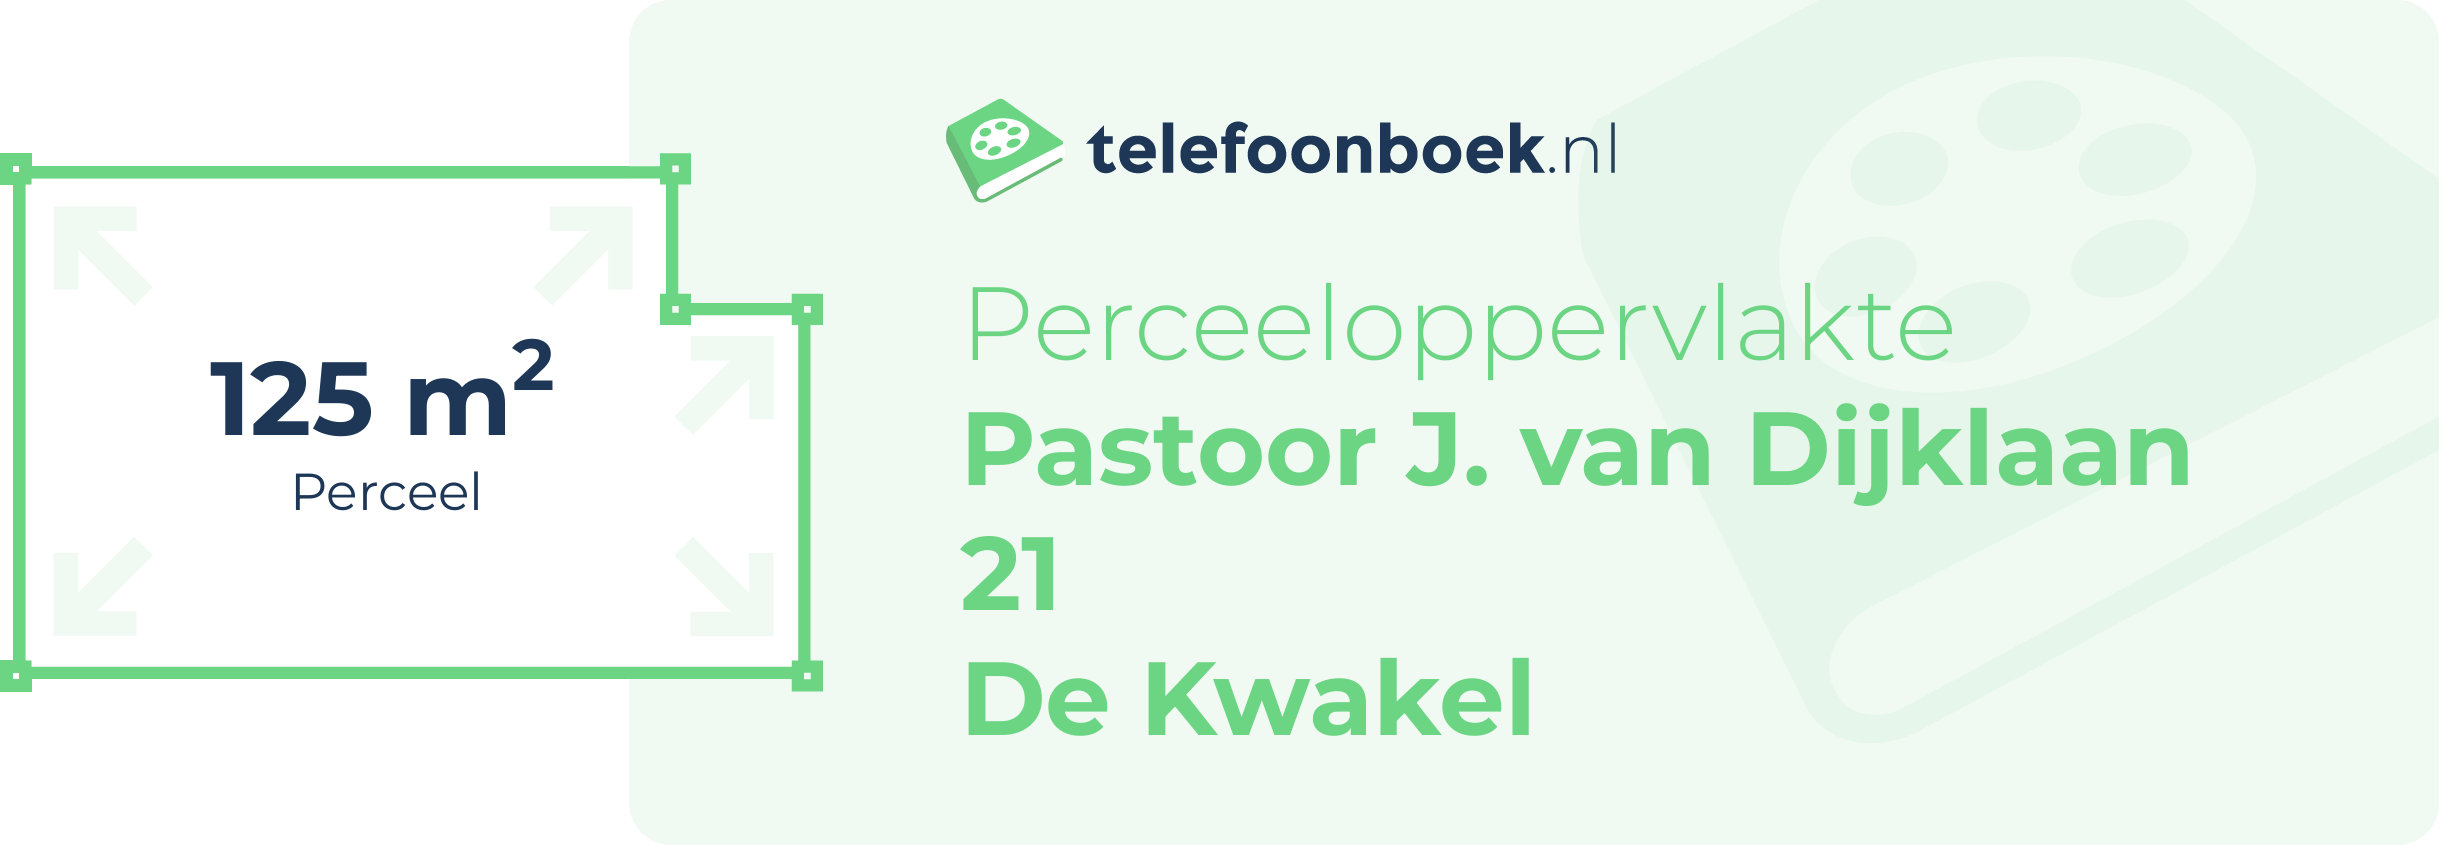 Perceeloppervlakte Pastoor J. Van Dijklaan 21 De Kwakel